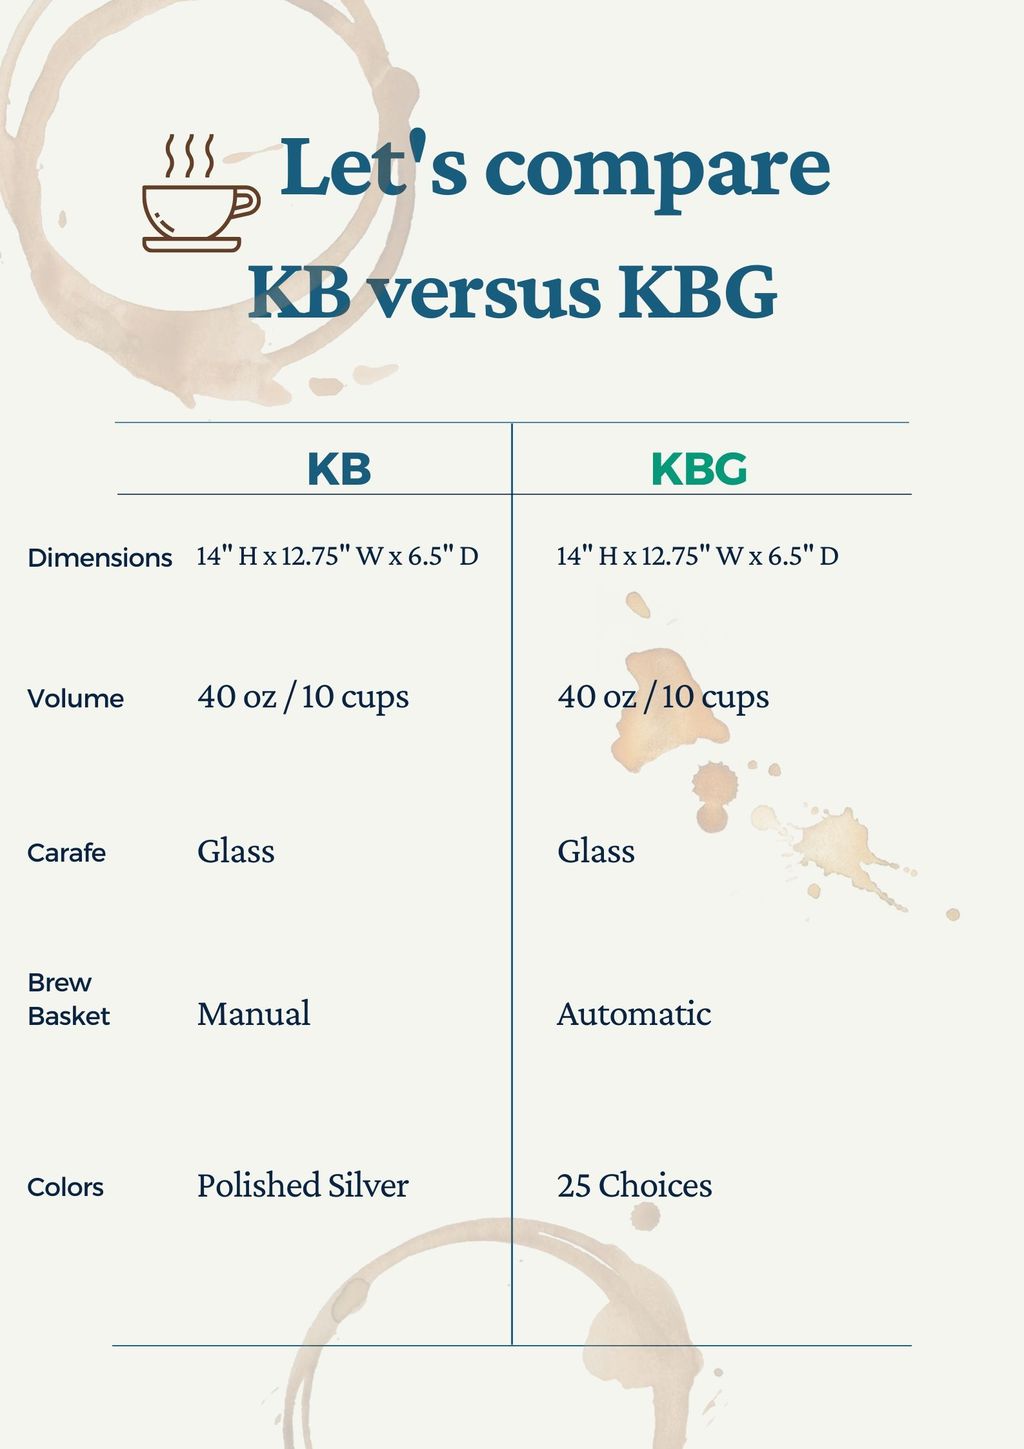 moccamaster kb versus kbg chart